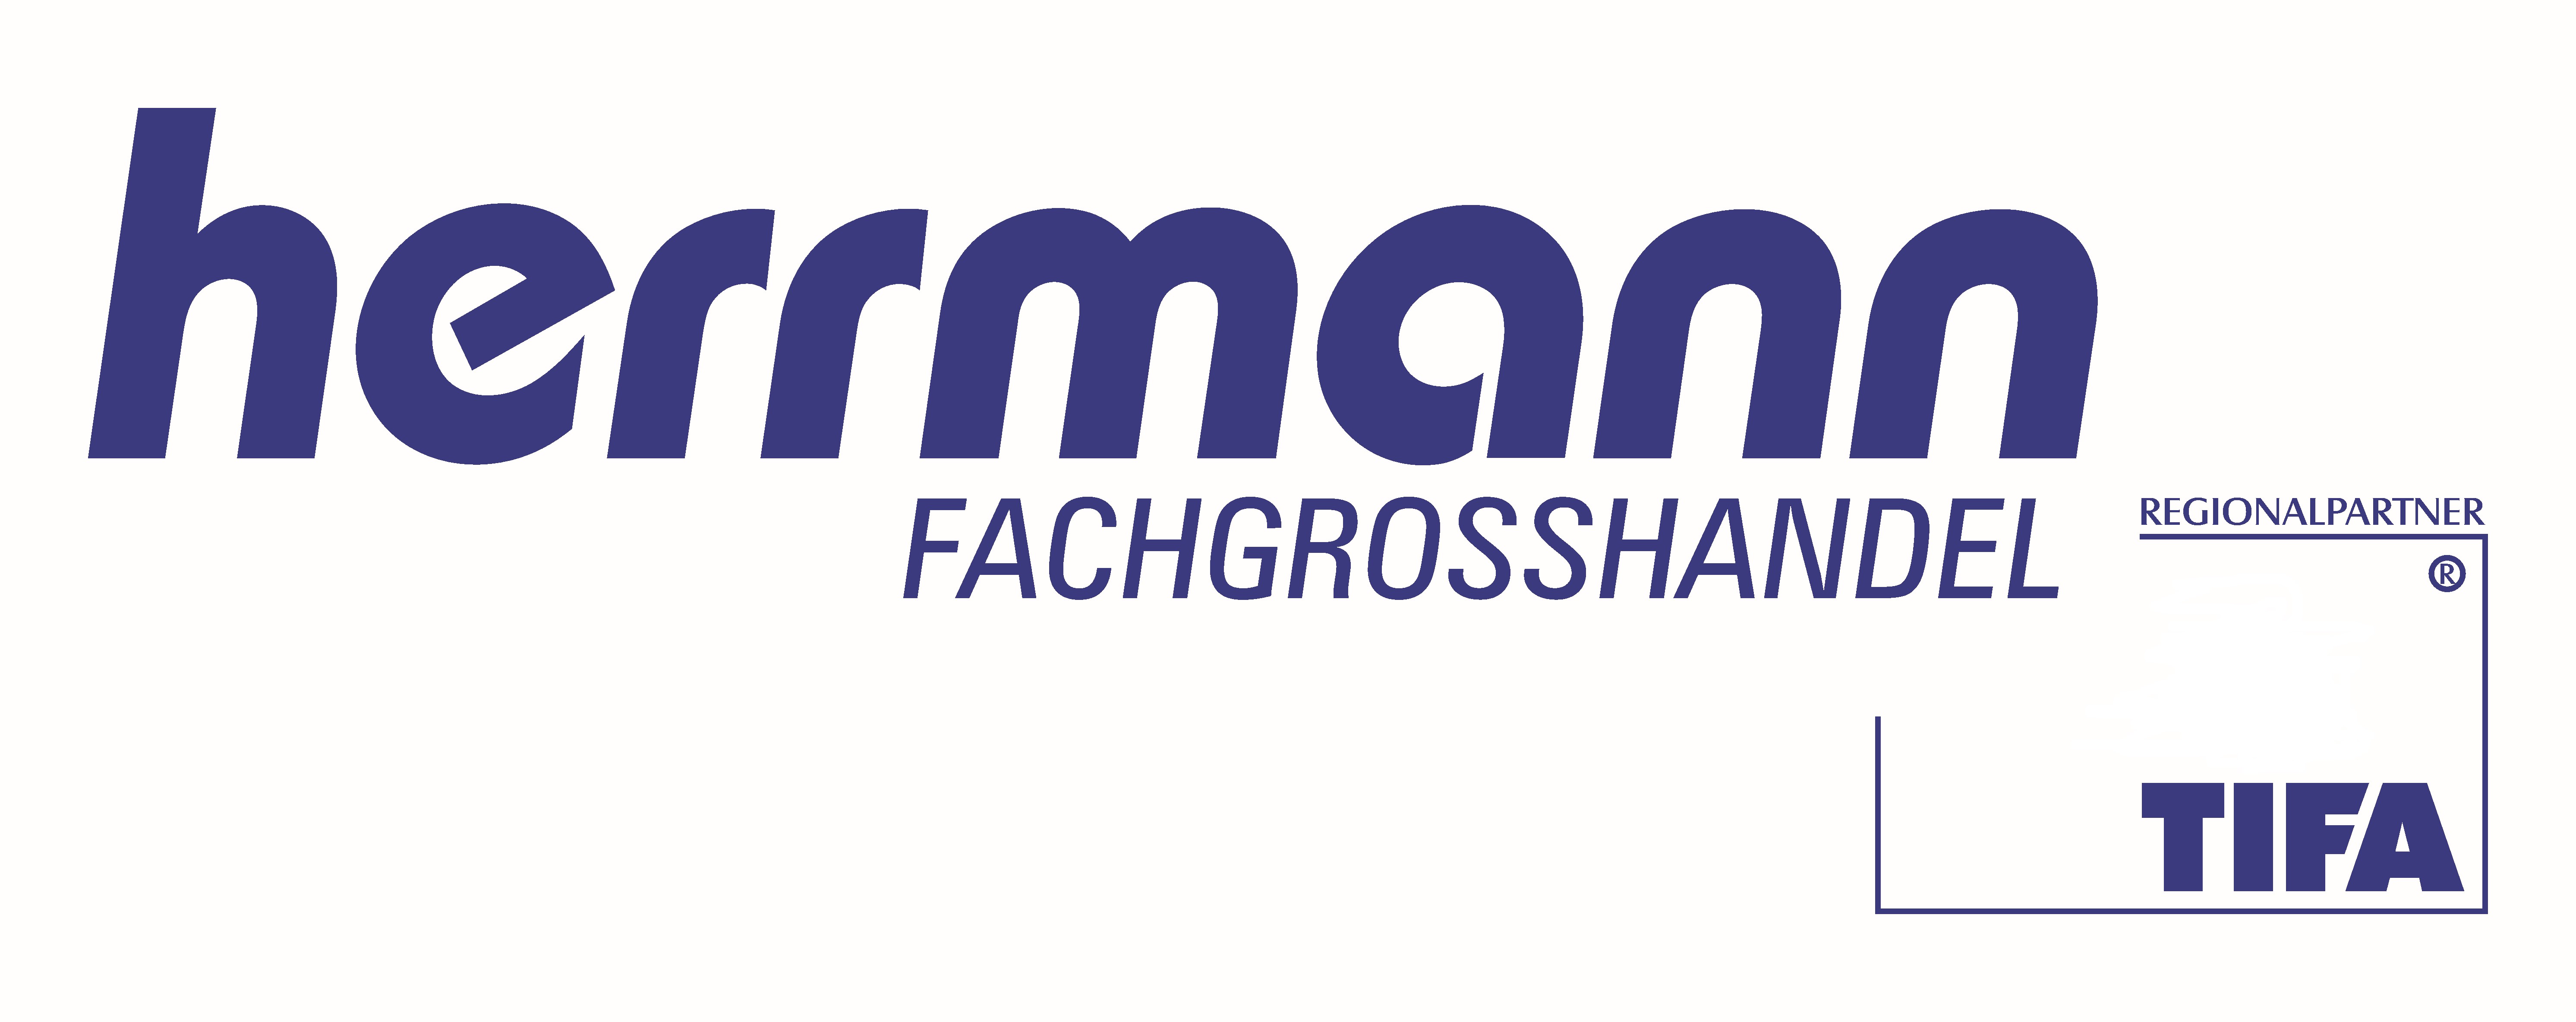 Herrmann Fachgroßhandel GmbH